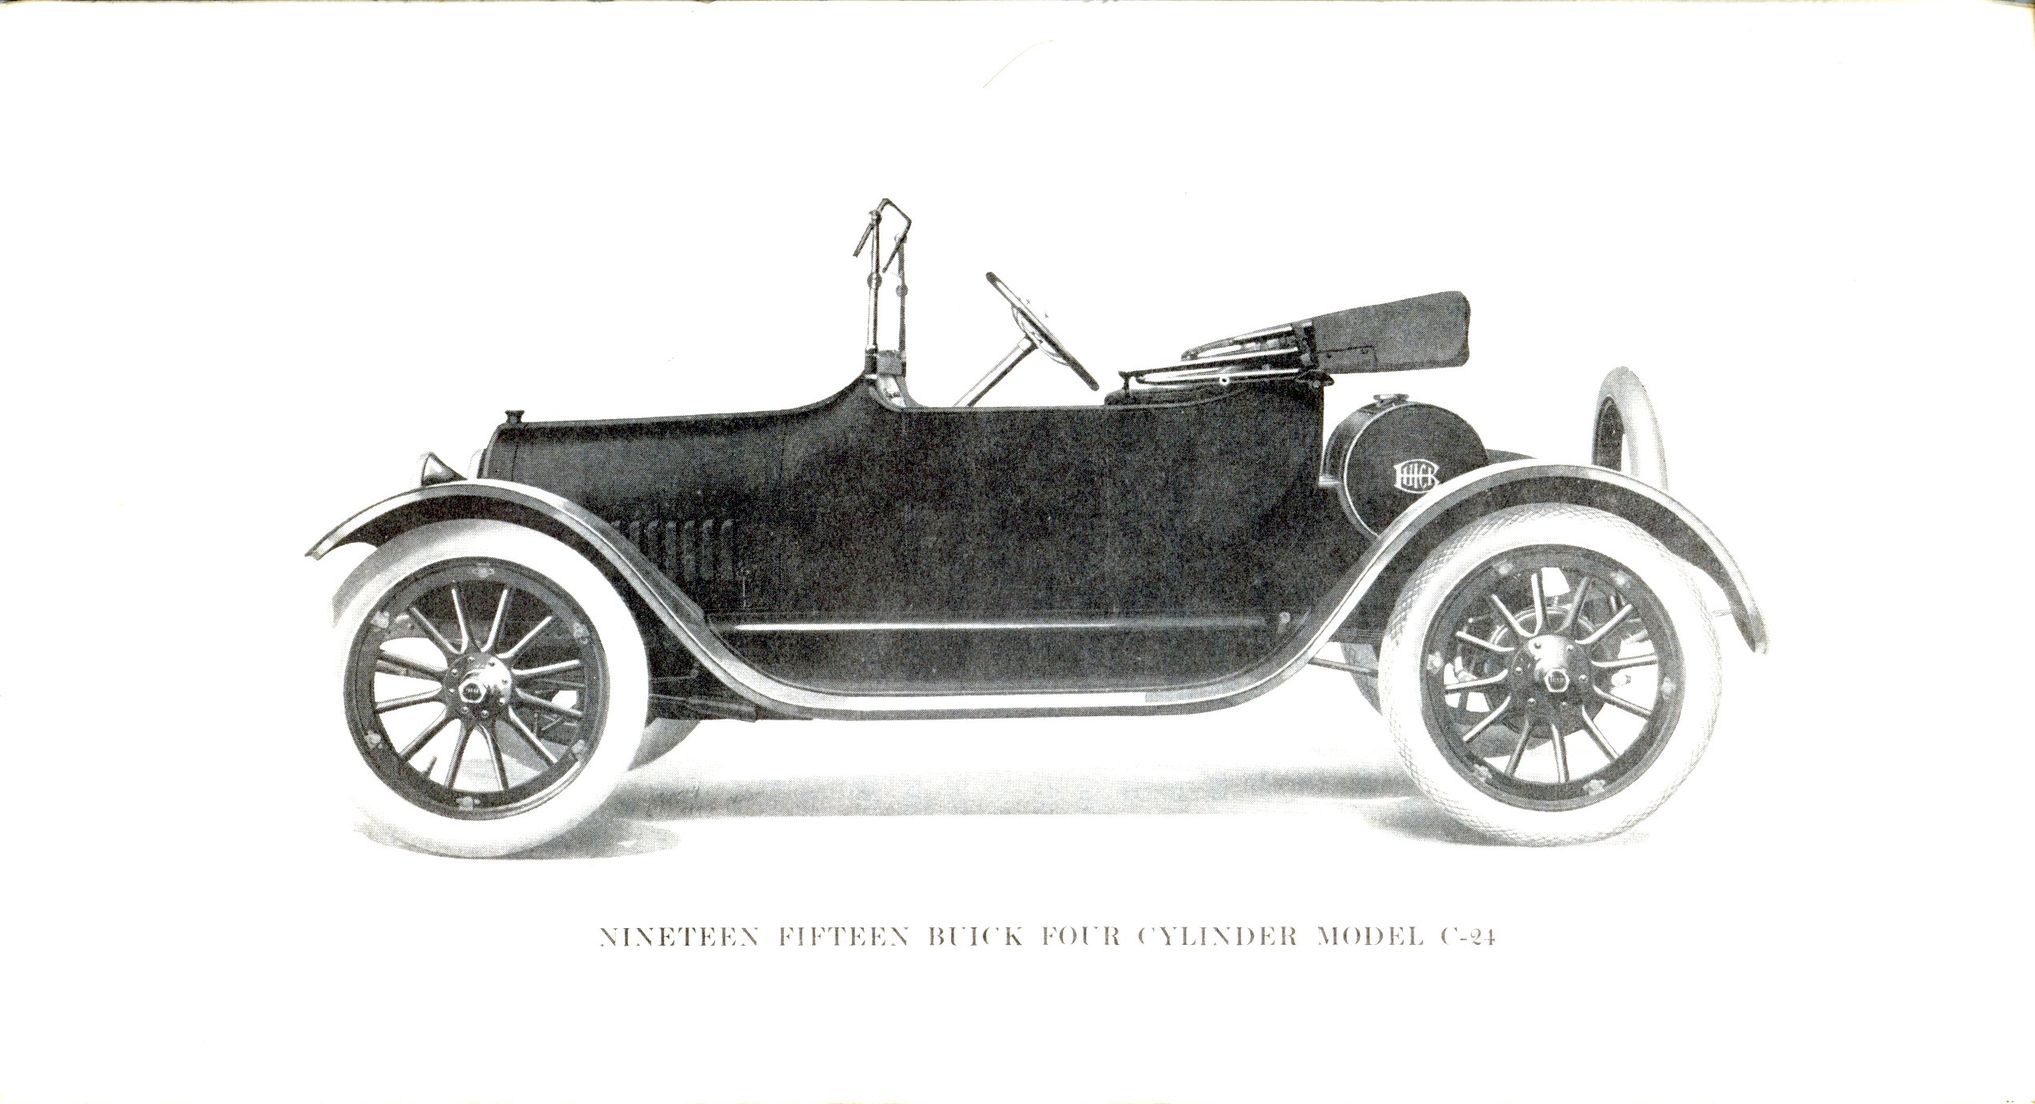 1915 Buick Specs-03